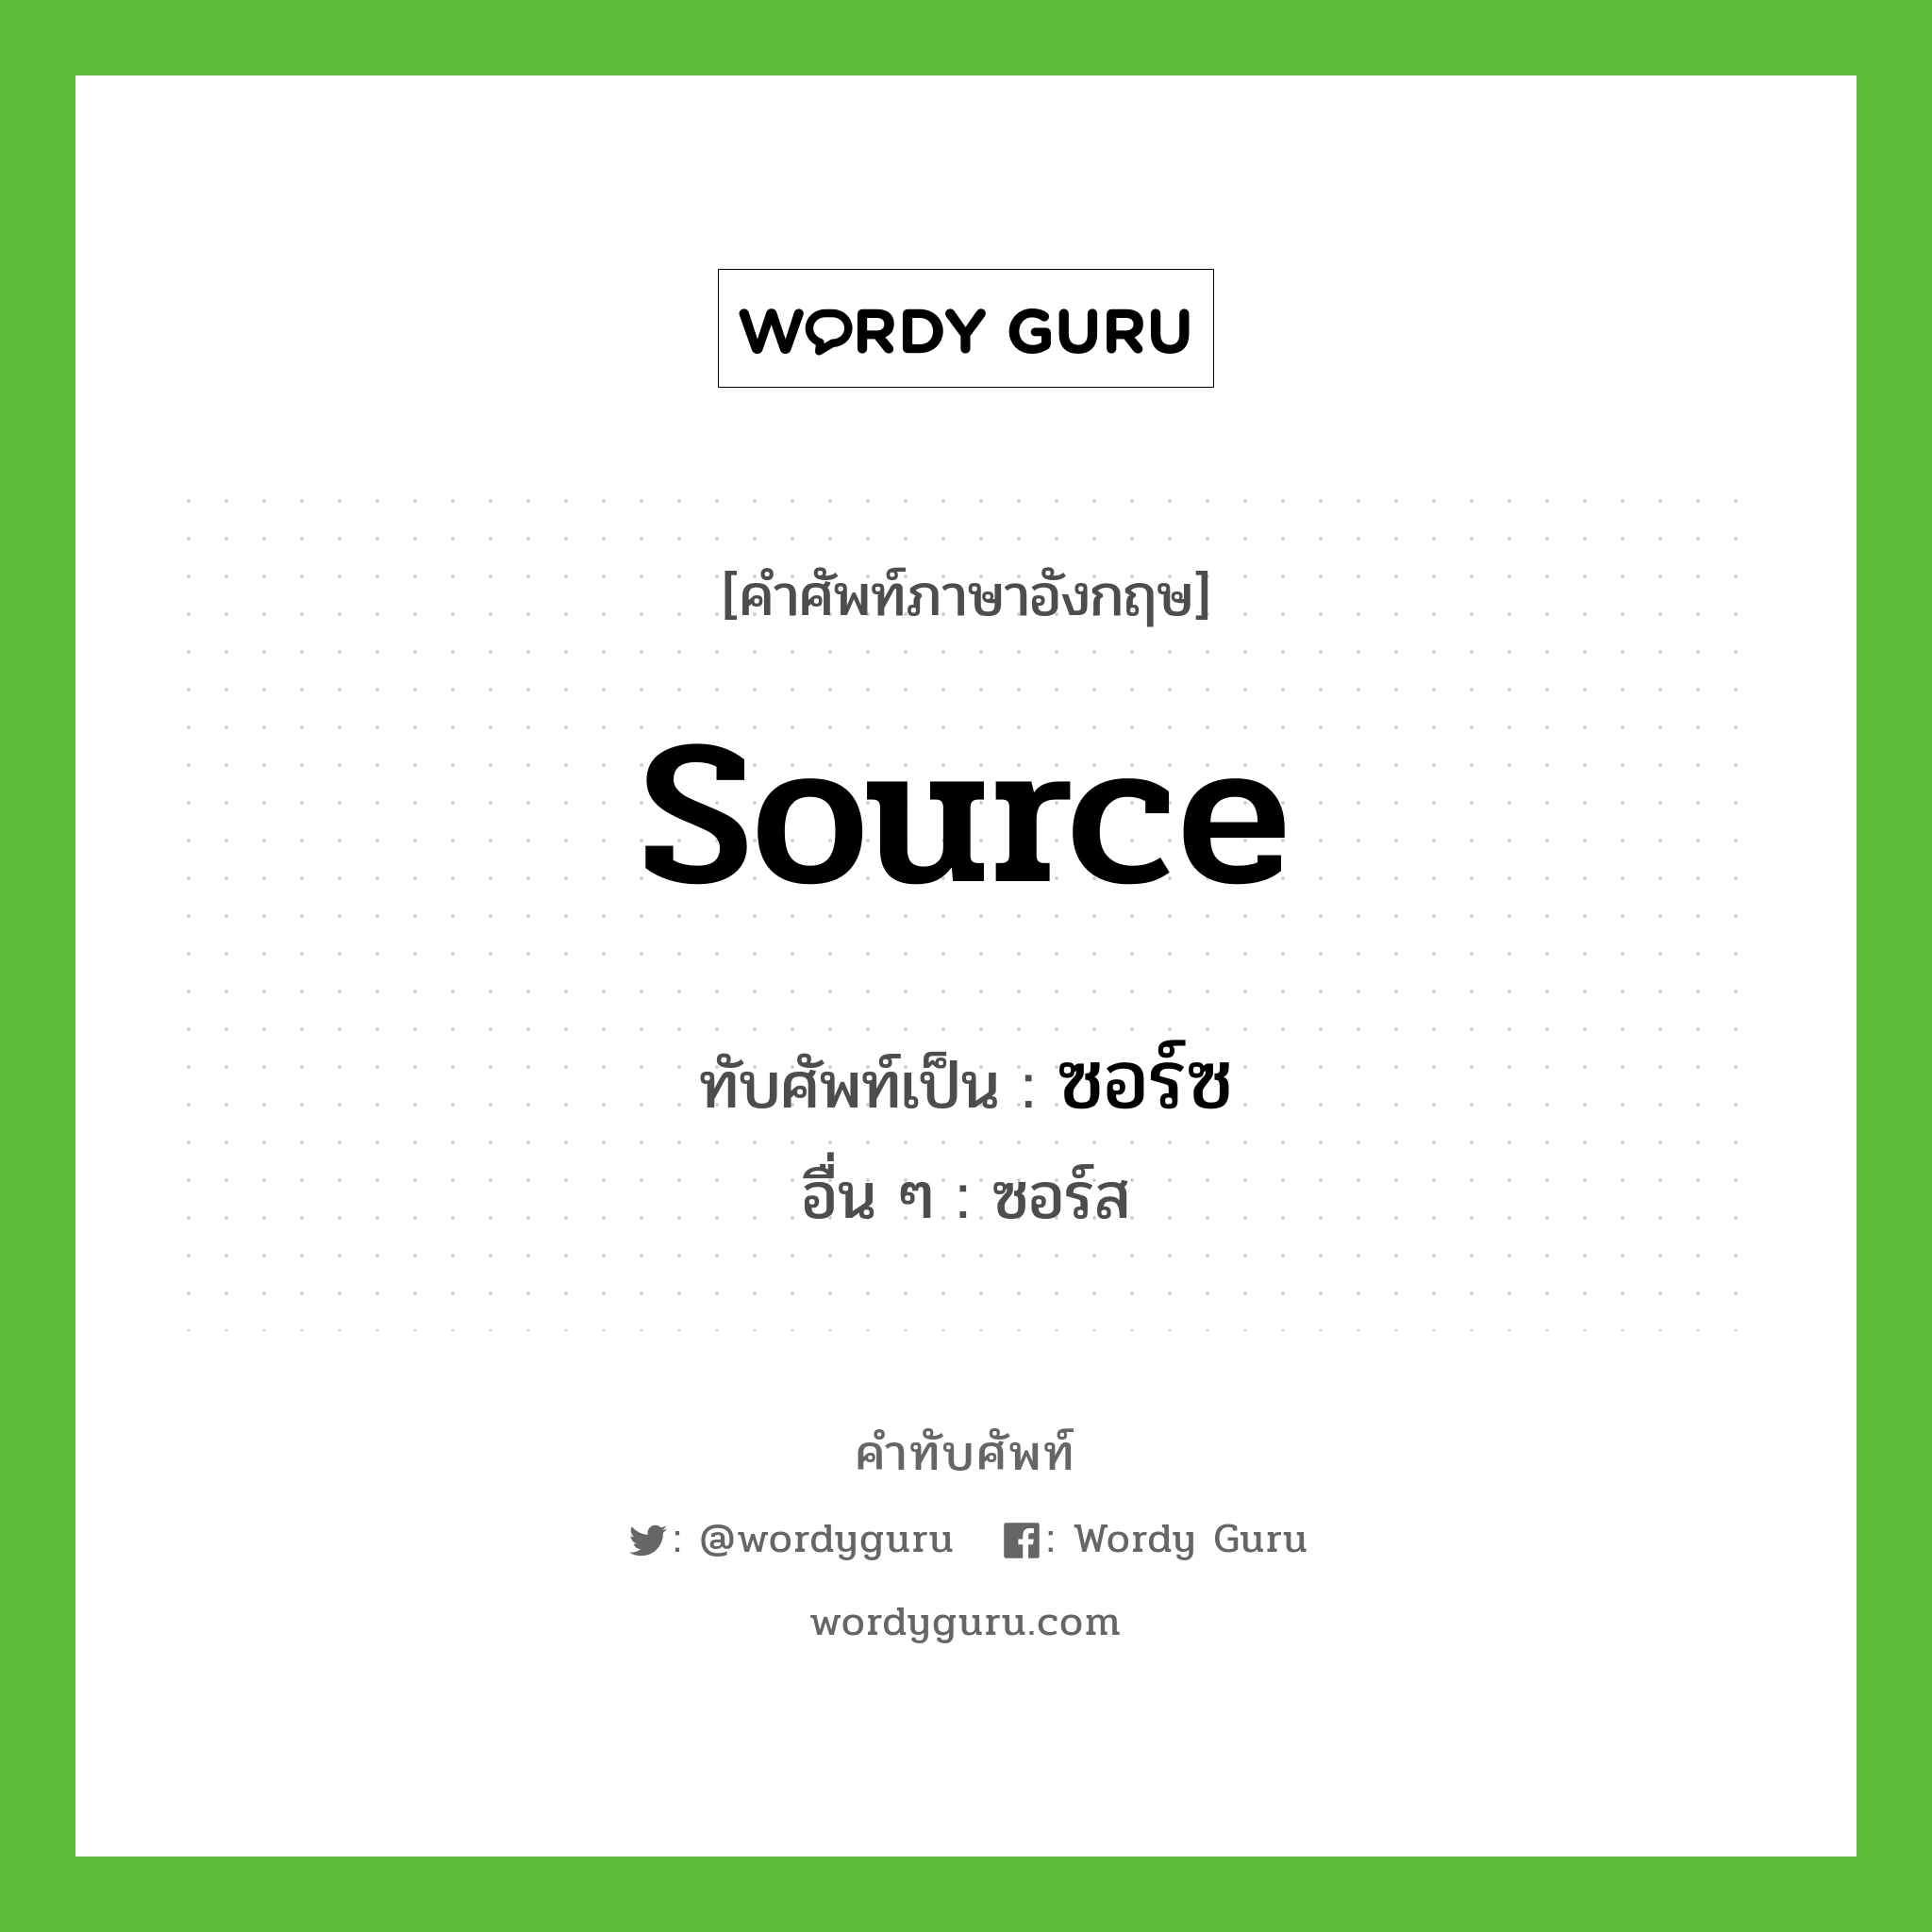 source เขียนเป็นคำไทยว่าอะไร?, คำศัพท์ภาษาอังกฤษ source ทับศัพท์เป็น ซอร์ซ อื่น ๆ ซอร์ส